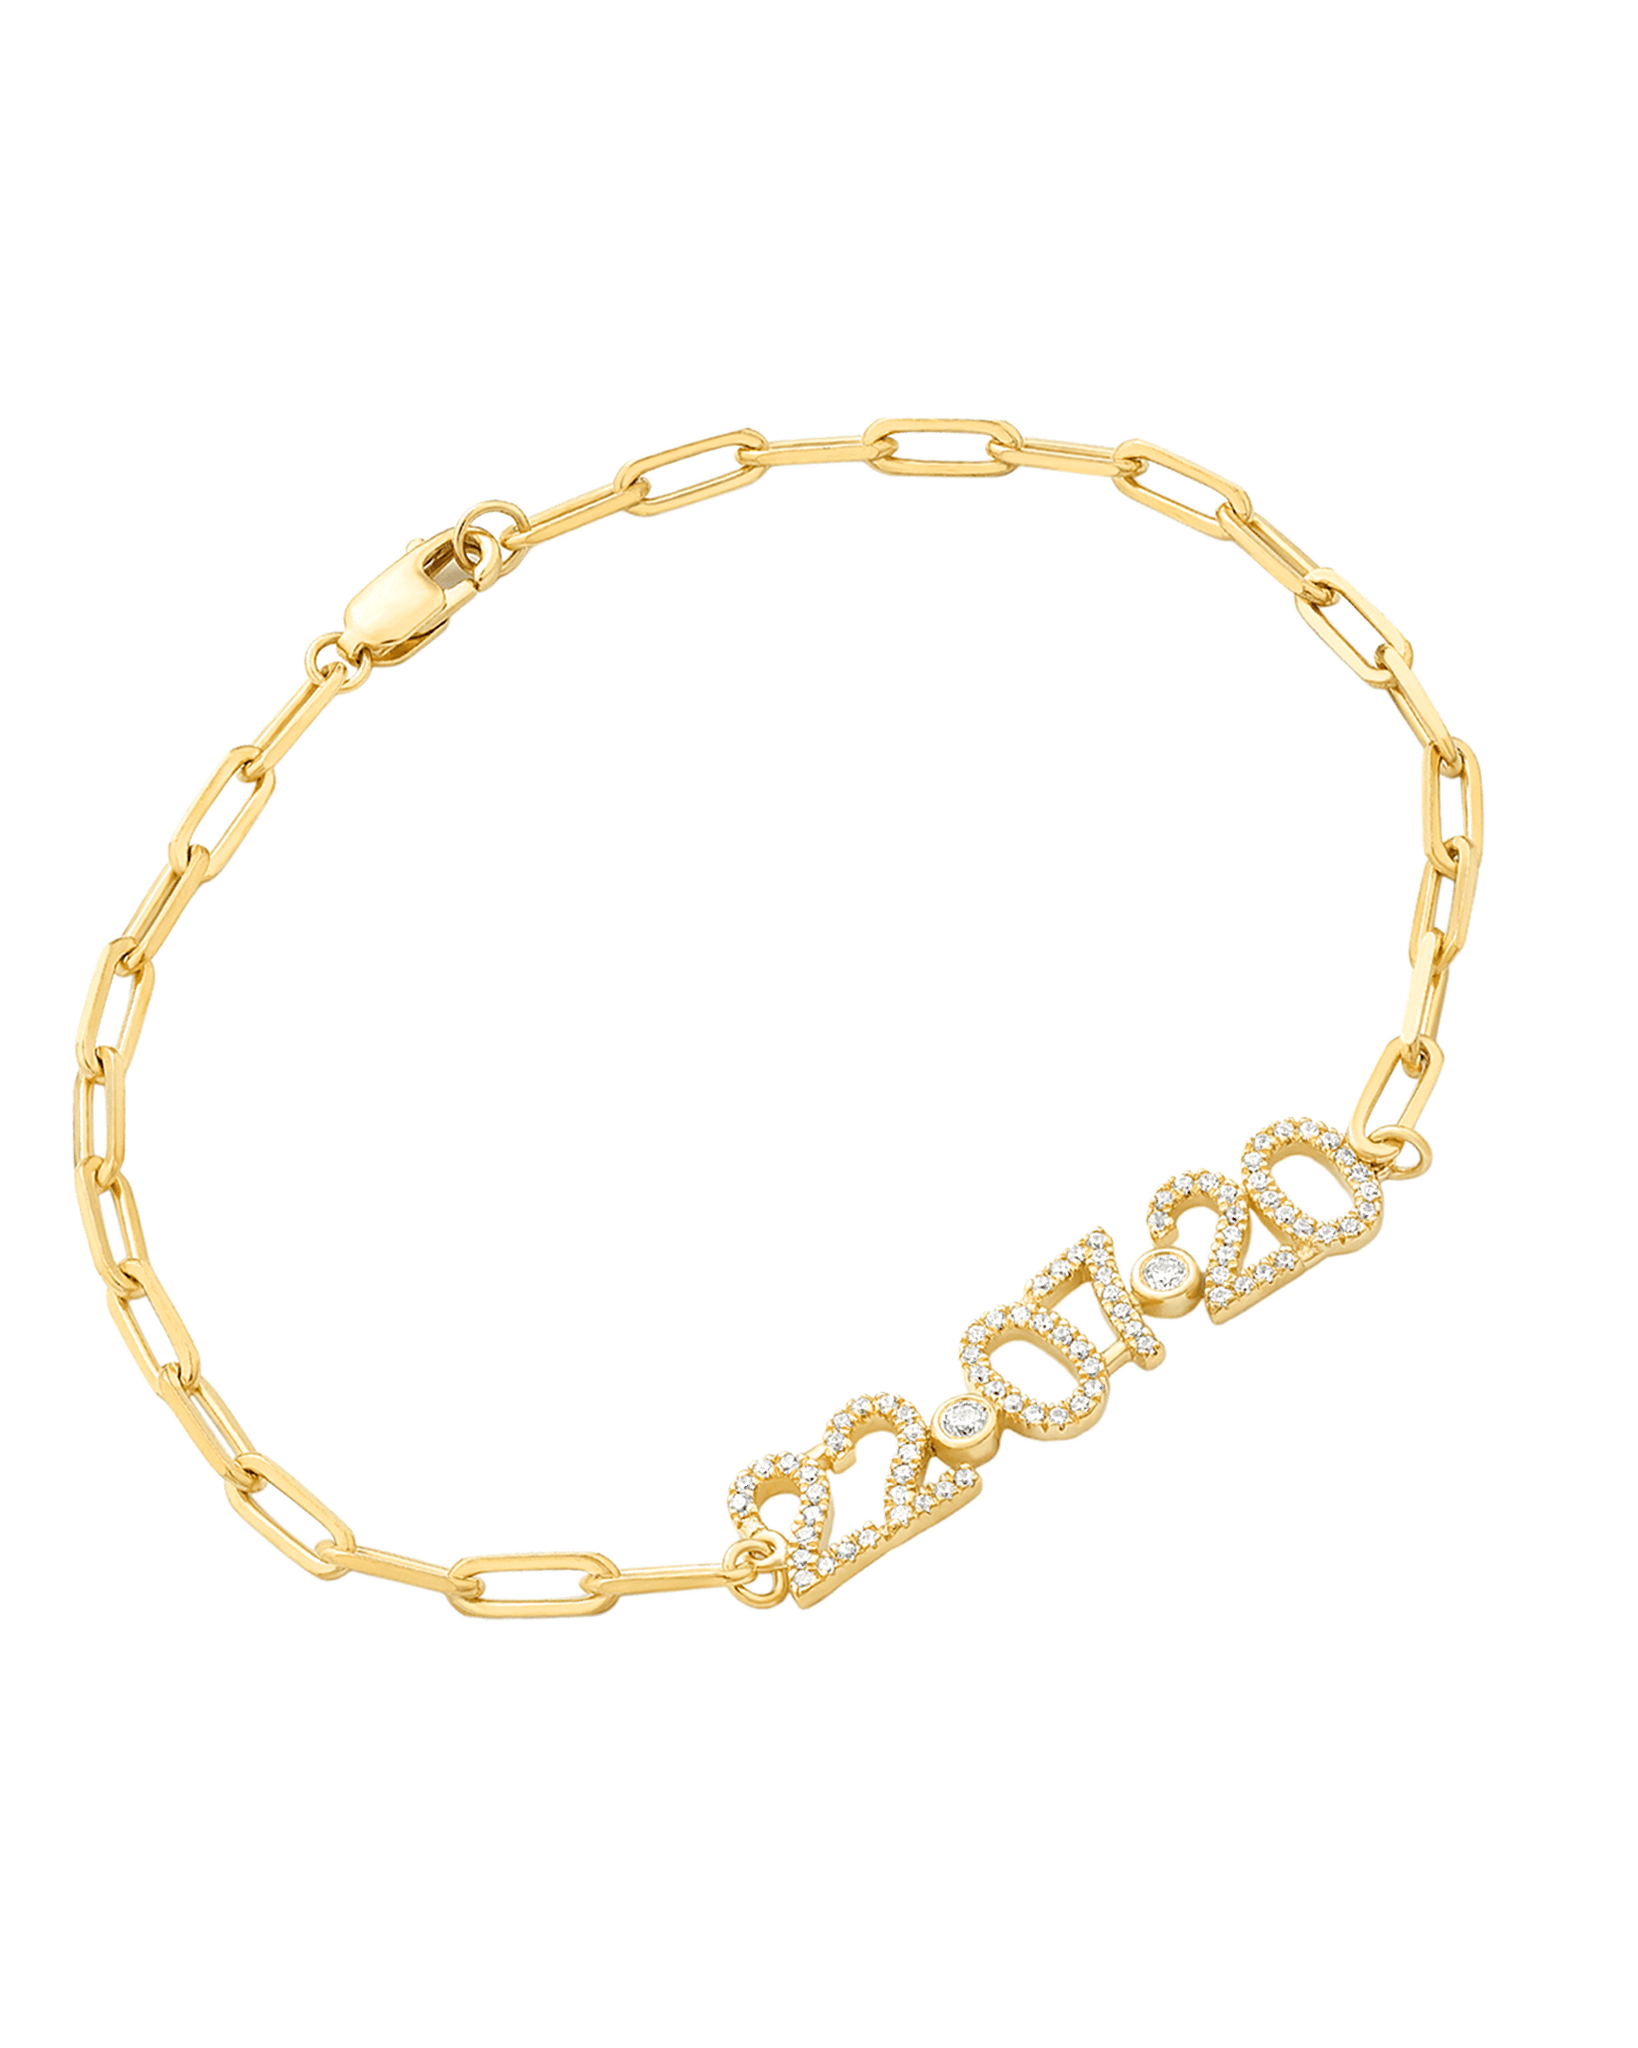 Birthdate Diamond Paved Bracelet - 14K Rose Gold Bracelets magal-dev 